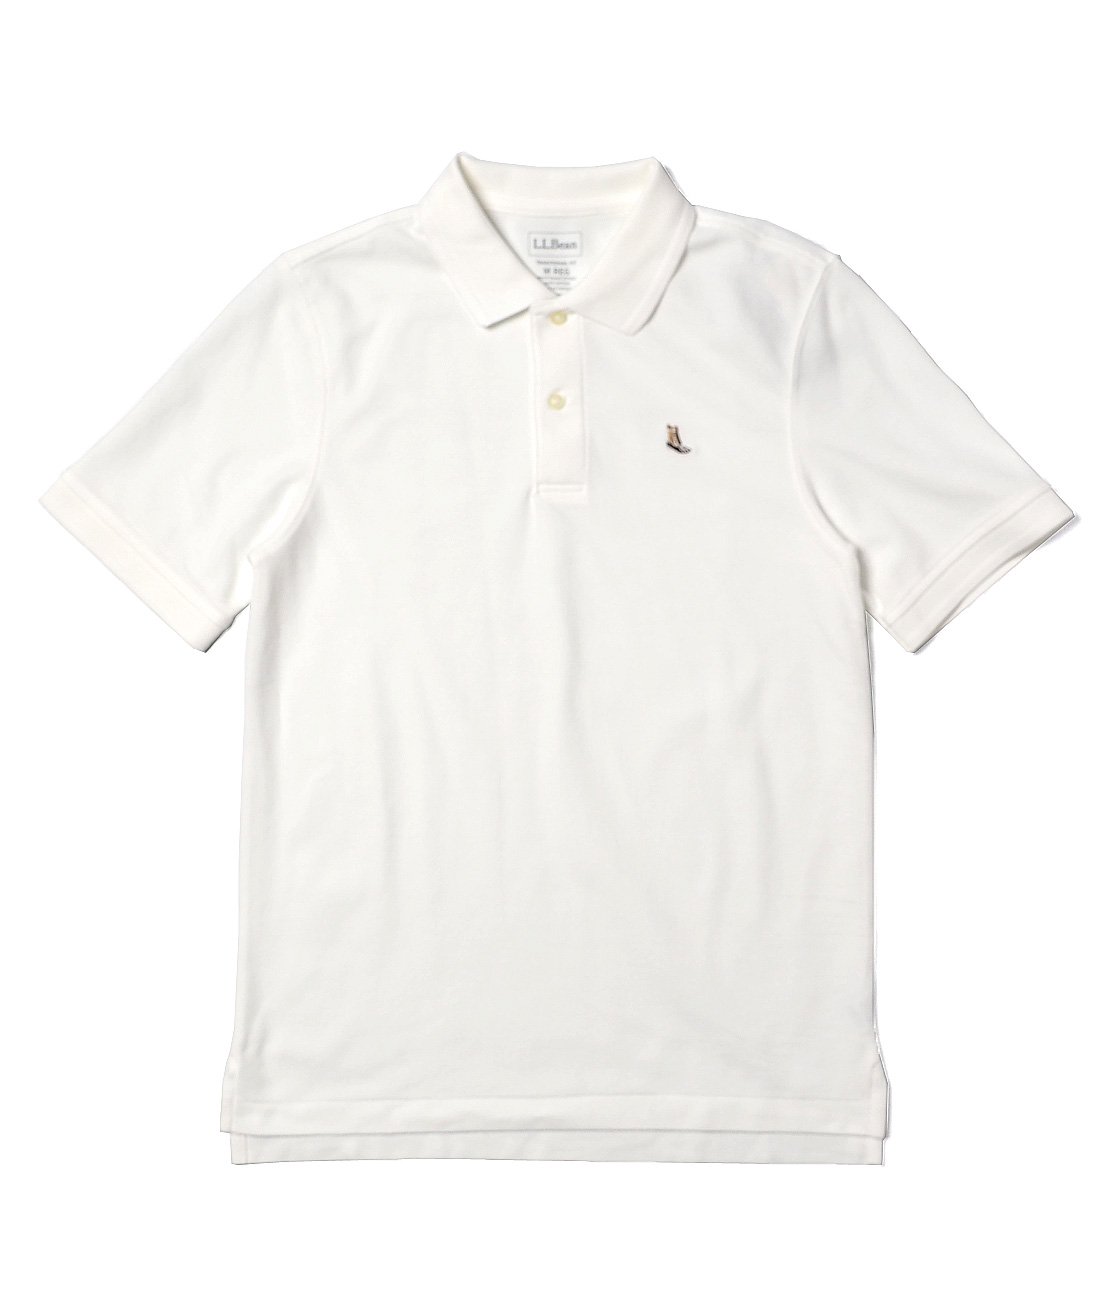 L.L.Bean】PREMIUM DOUBLE L POLO SHIRT - WHITE ポロシャツ 半袖 日本